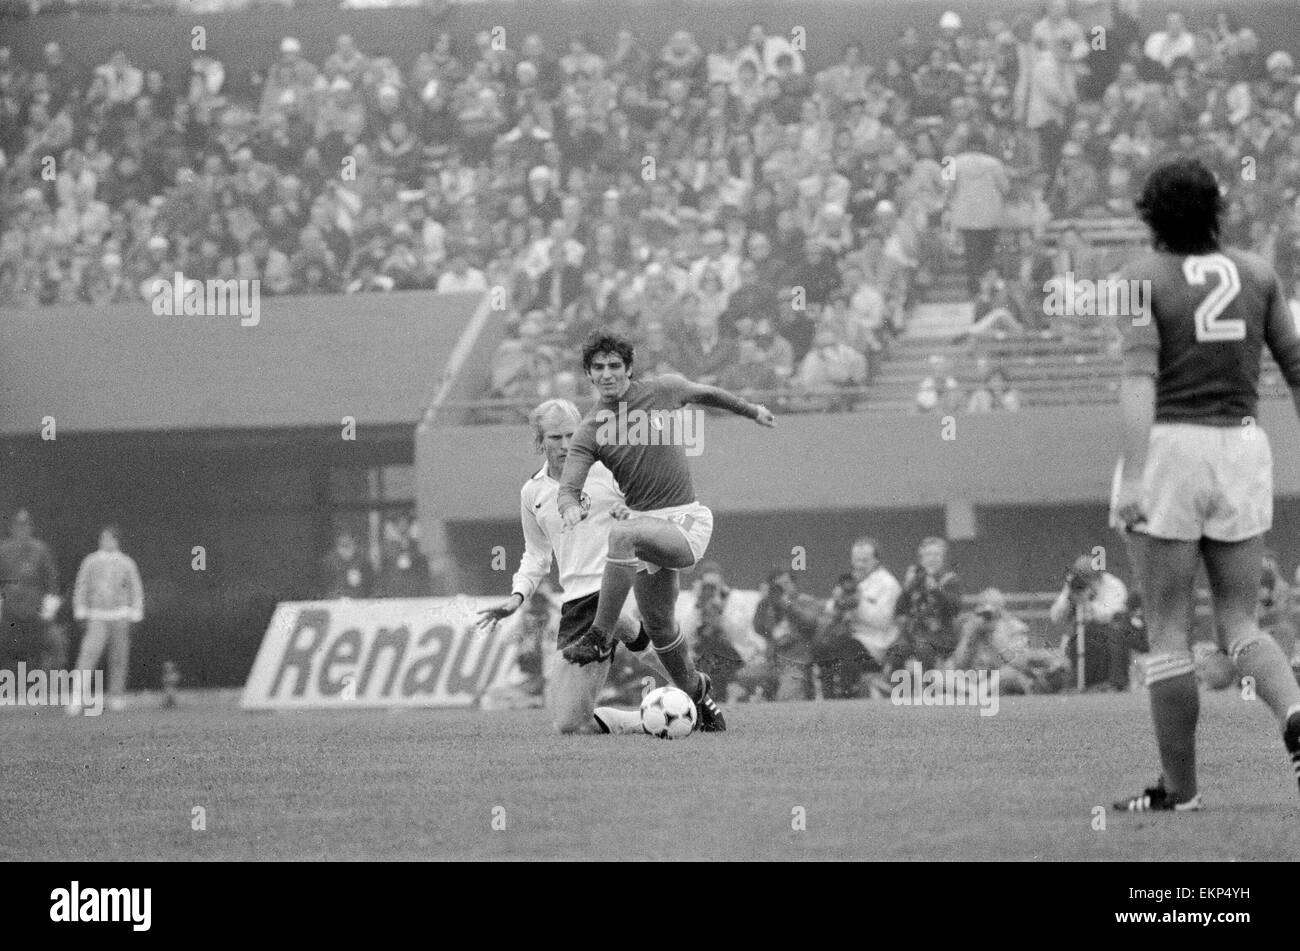 1978 World Cup secondo turno gruppo a una partita a Buenos Aires, Argentina. Italia v Germania Ovest 0. Italia di Paolo Rossi contestata da Berti Vogts. 14 giugno 1978. Foto Stock